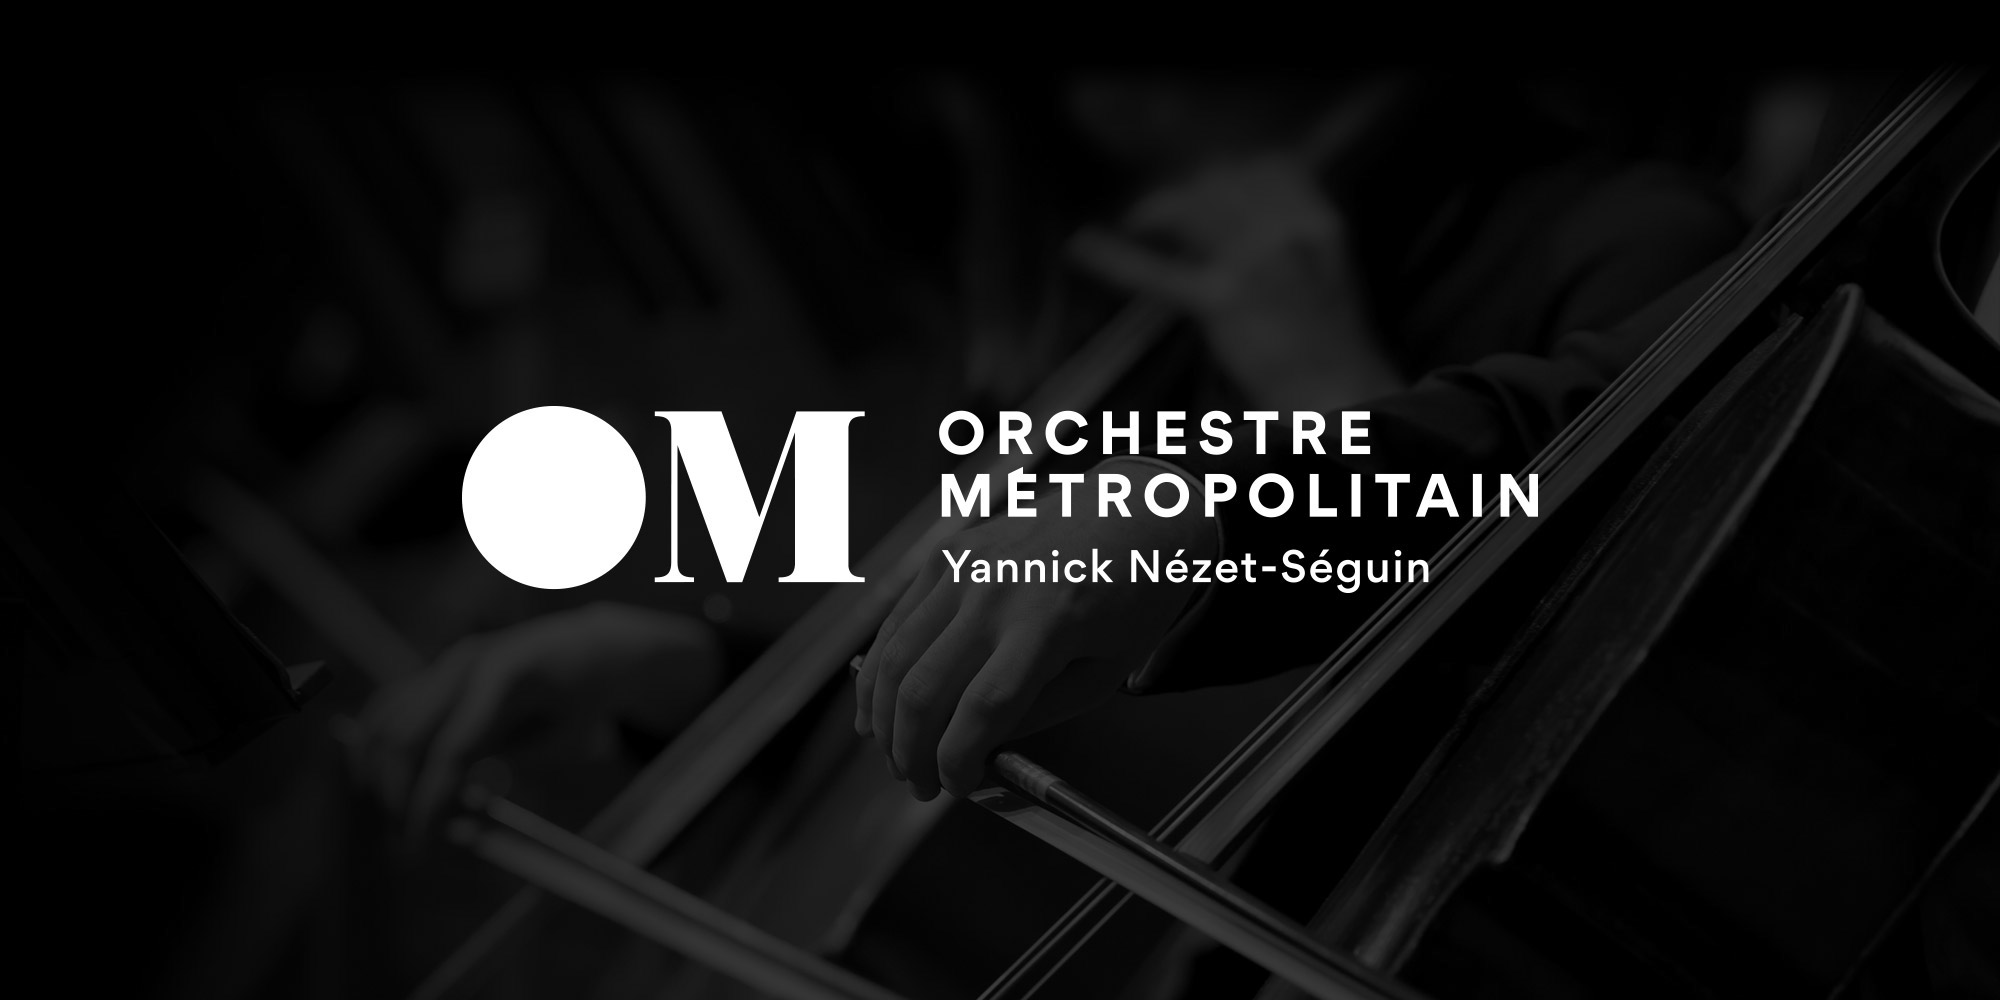 大都会管弦乐团(The Metropolitain Orchestra)品牌视觉设计